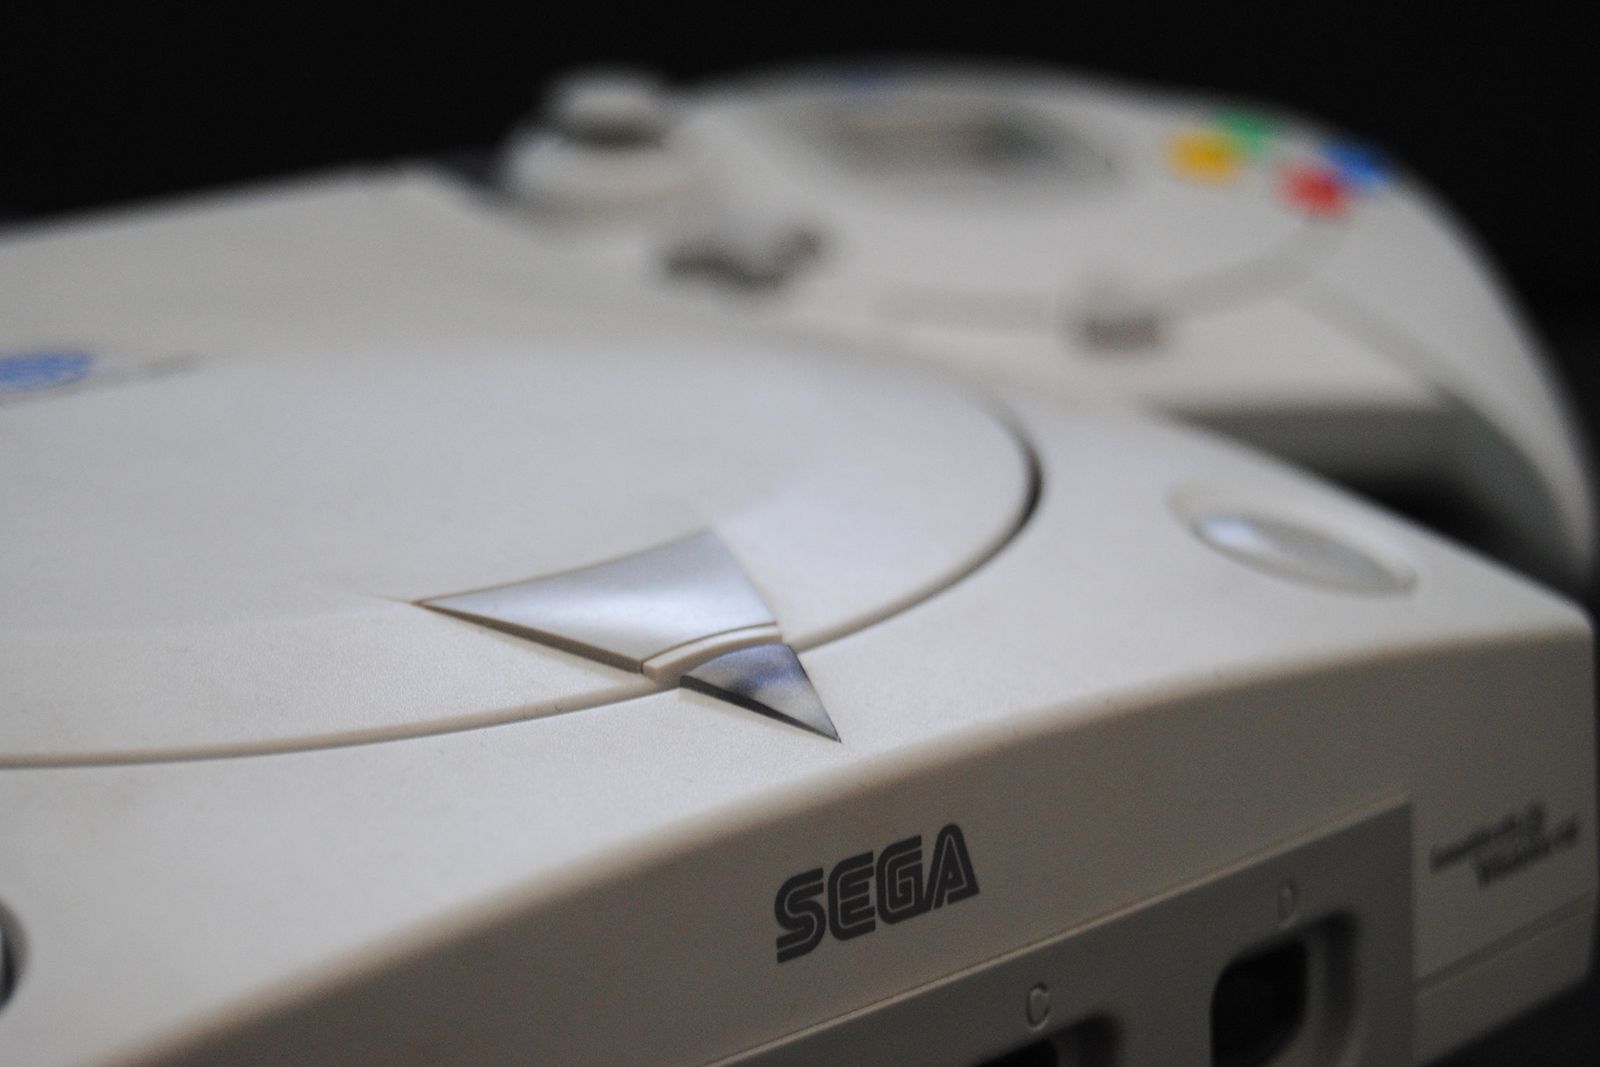 Sega Dreamcast Mini could be its next retro console release